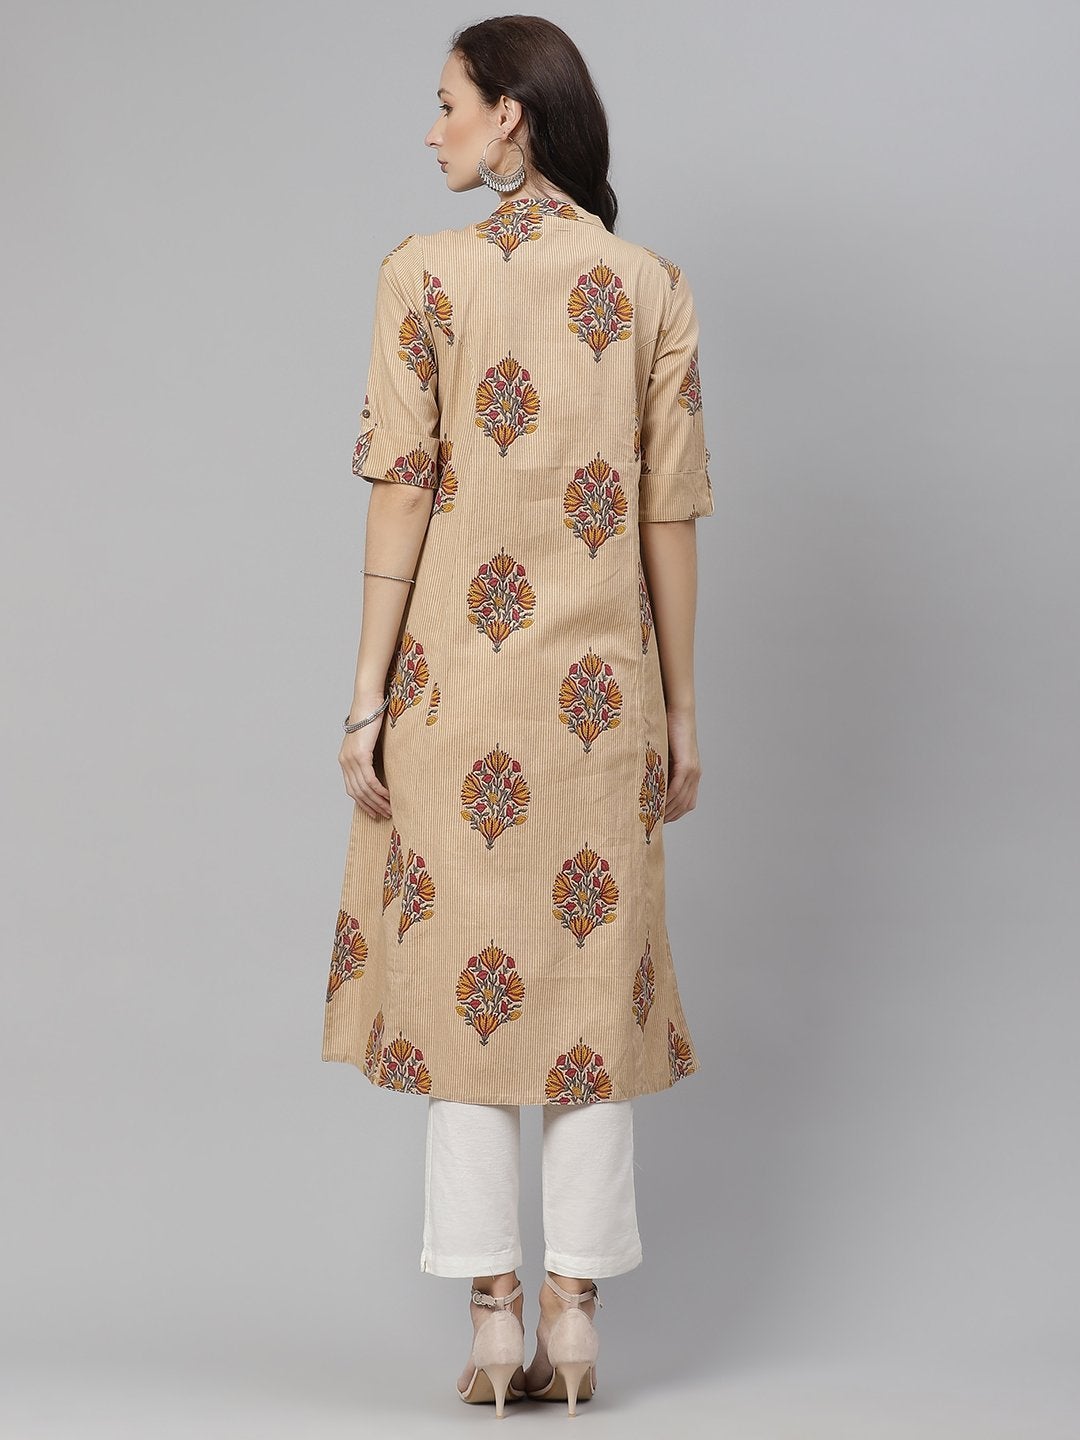 Women's Beige Color Cotton Printed A-line kurta - Divena